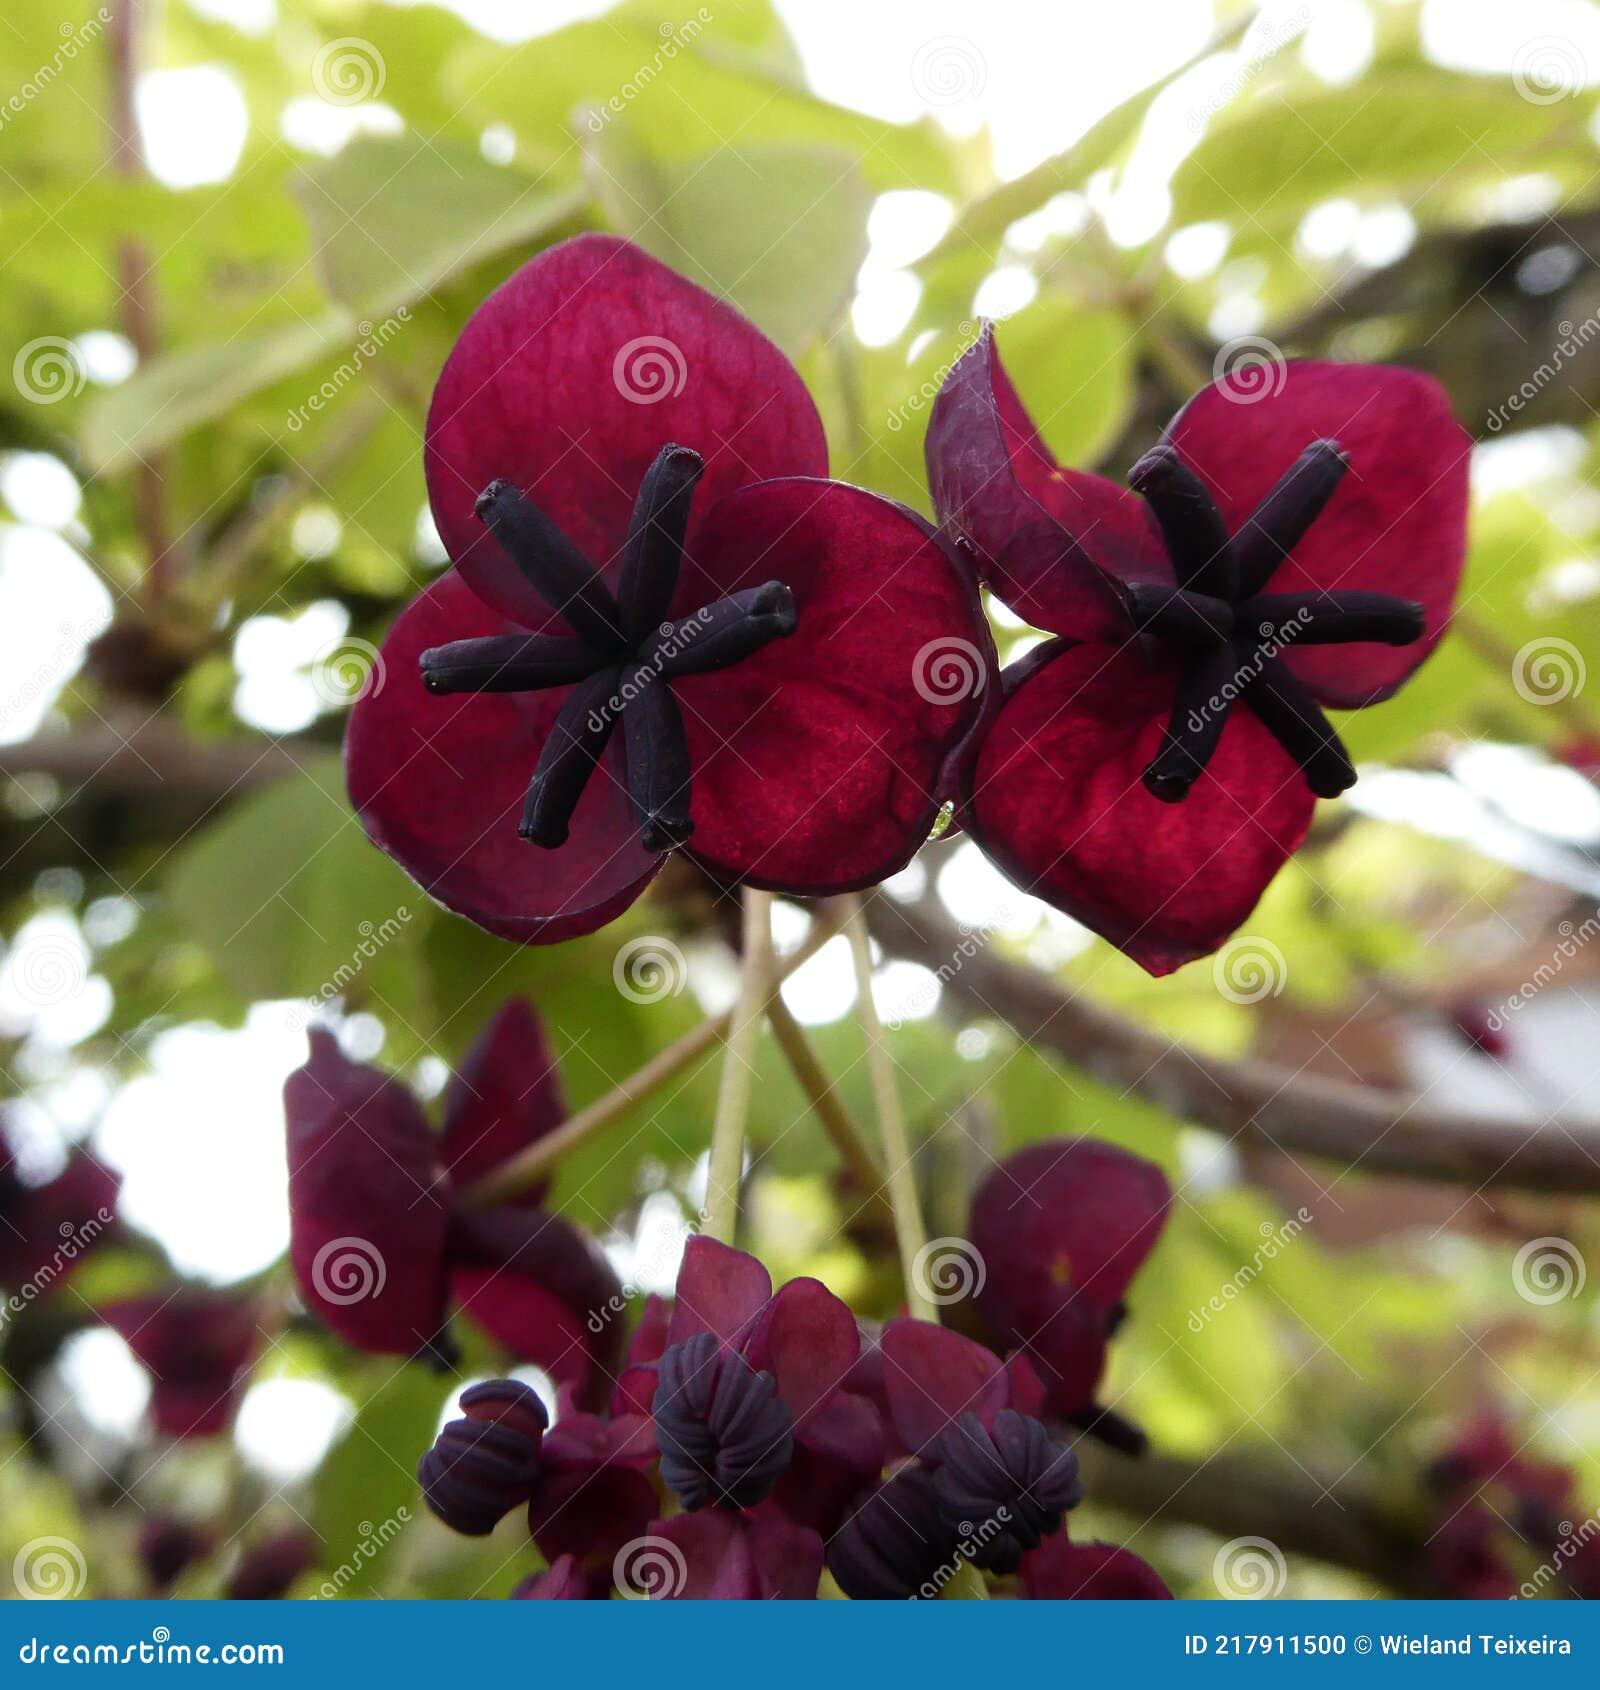 Las Flores De Vid De Chocolate Tienen Un Color Muy Especial Entre El Rojo  Vino Oscuro Y El Púrpura. Foto de archivo - Imagen de floral, hembra:  217911500